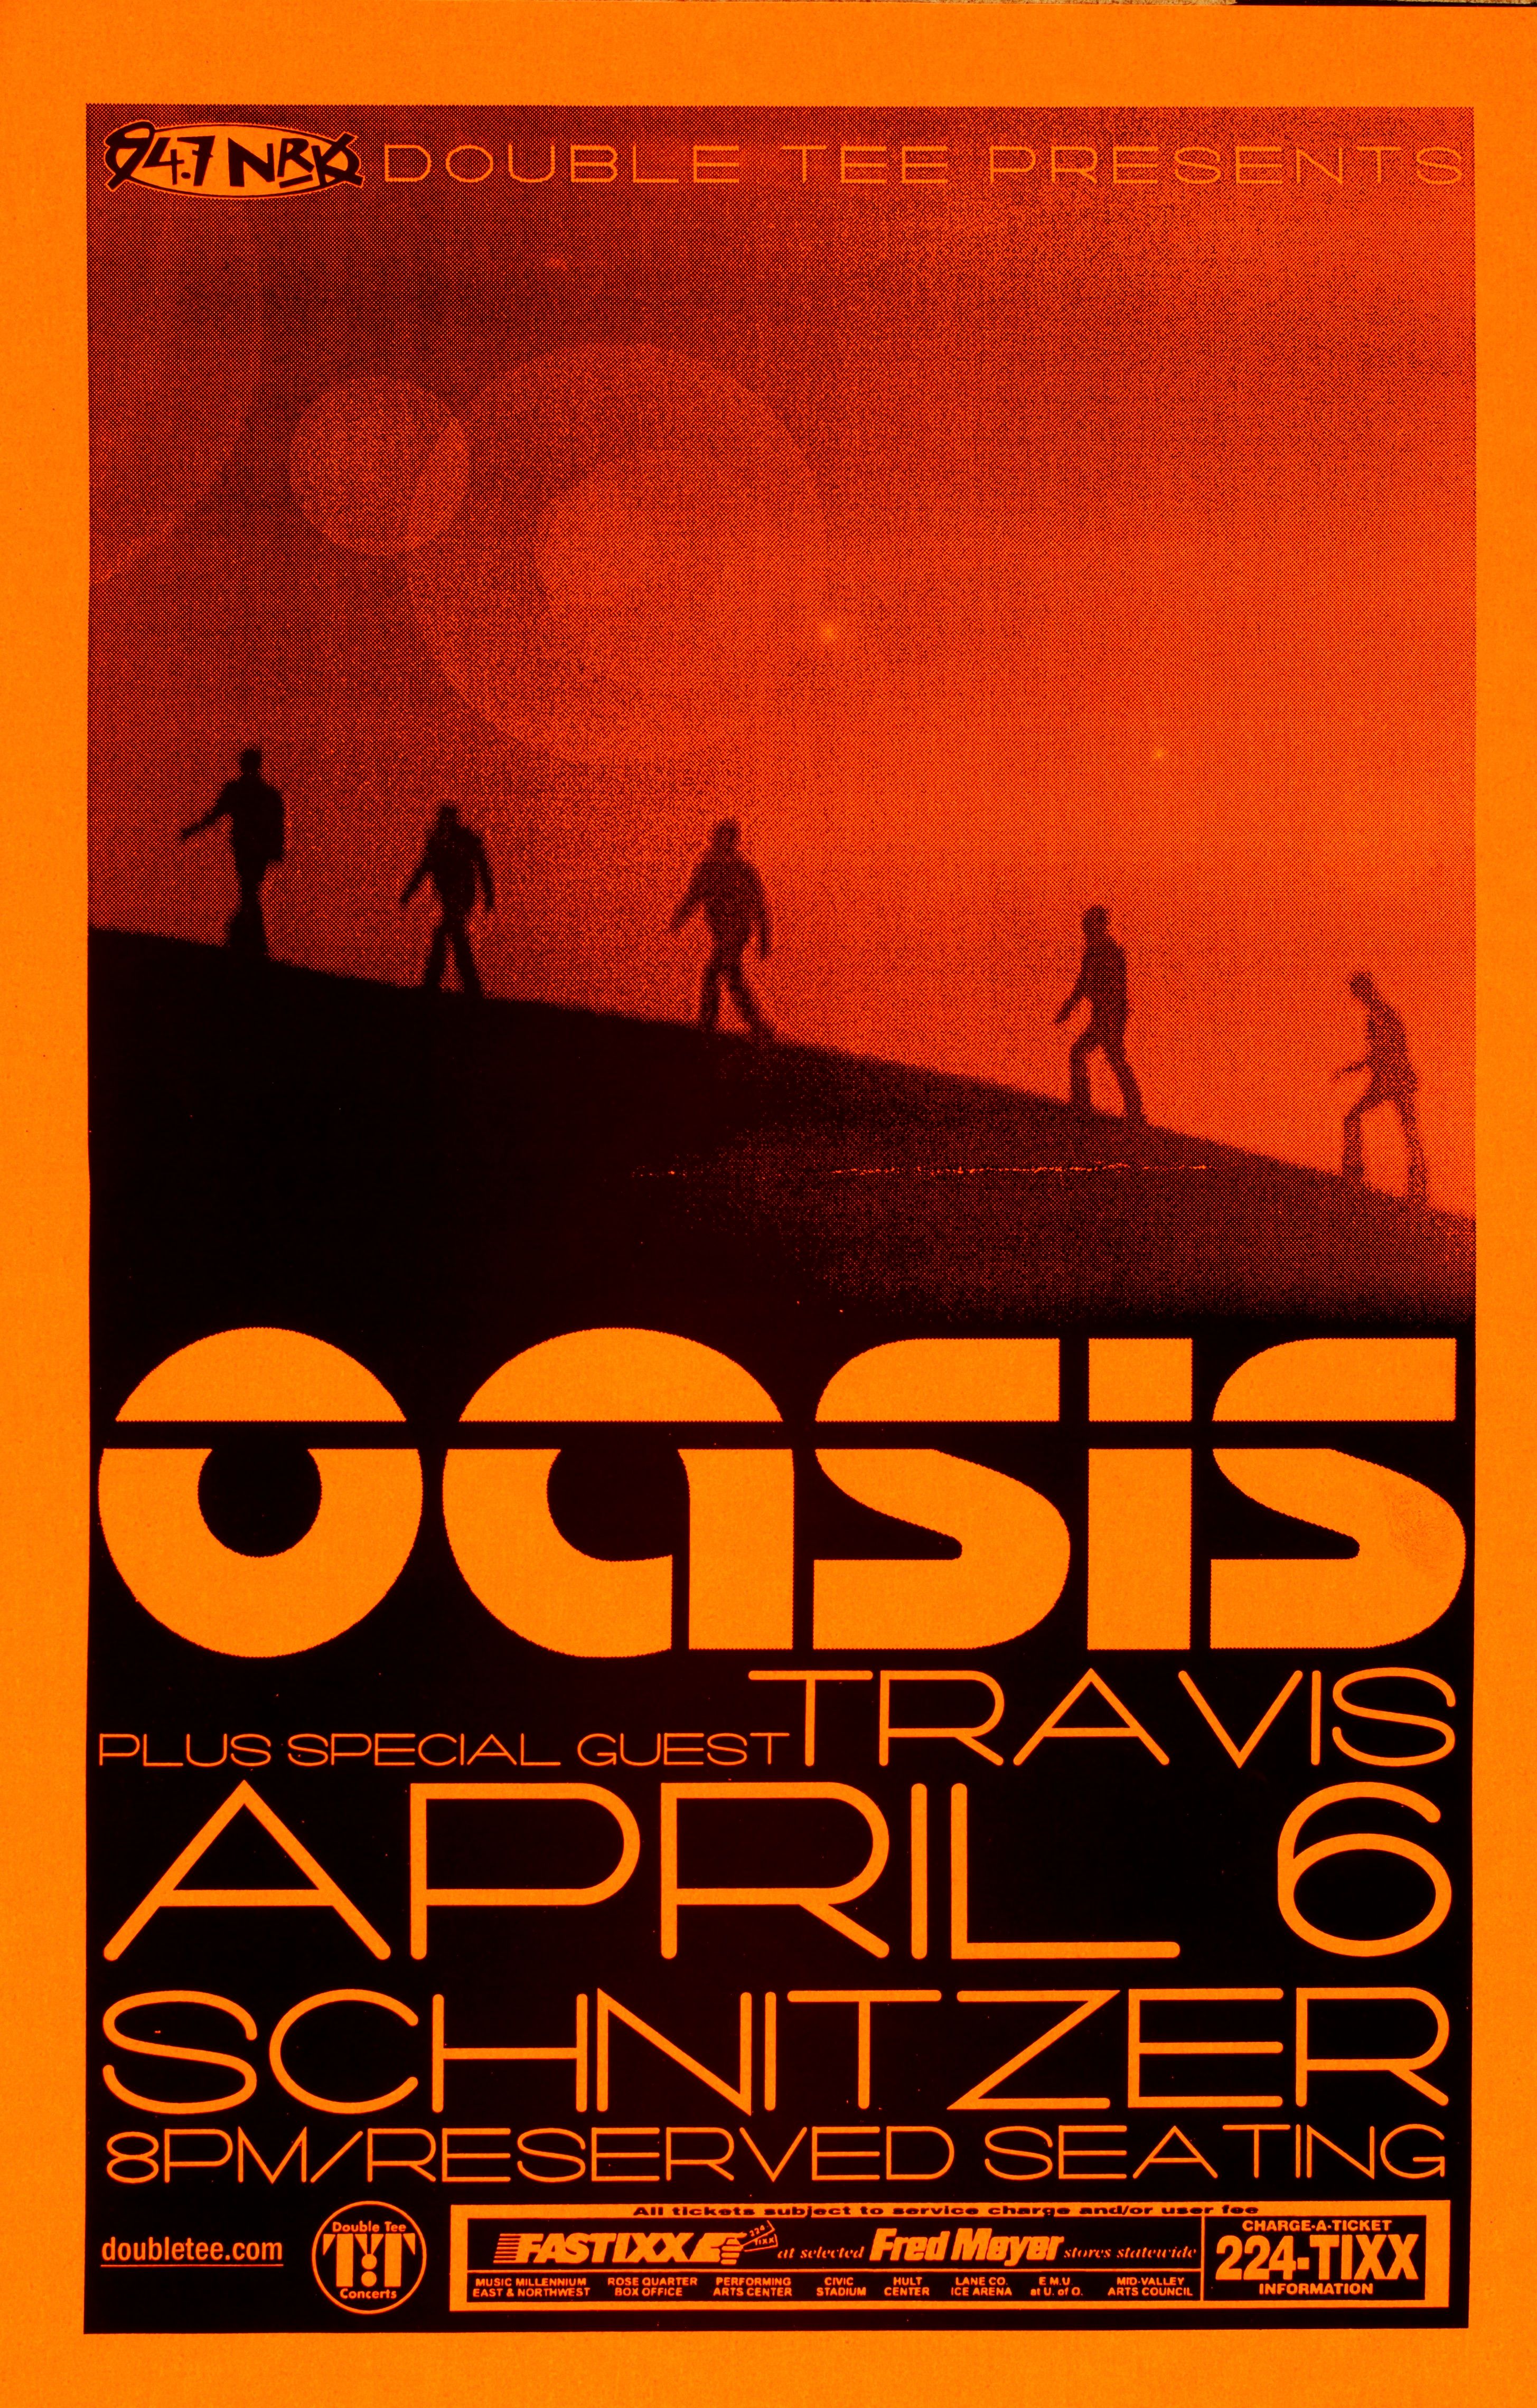 MXP-222.1 Oasis Schnitzer Hall 2000 Concert Poster